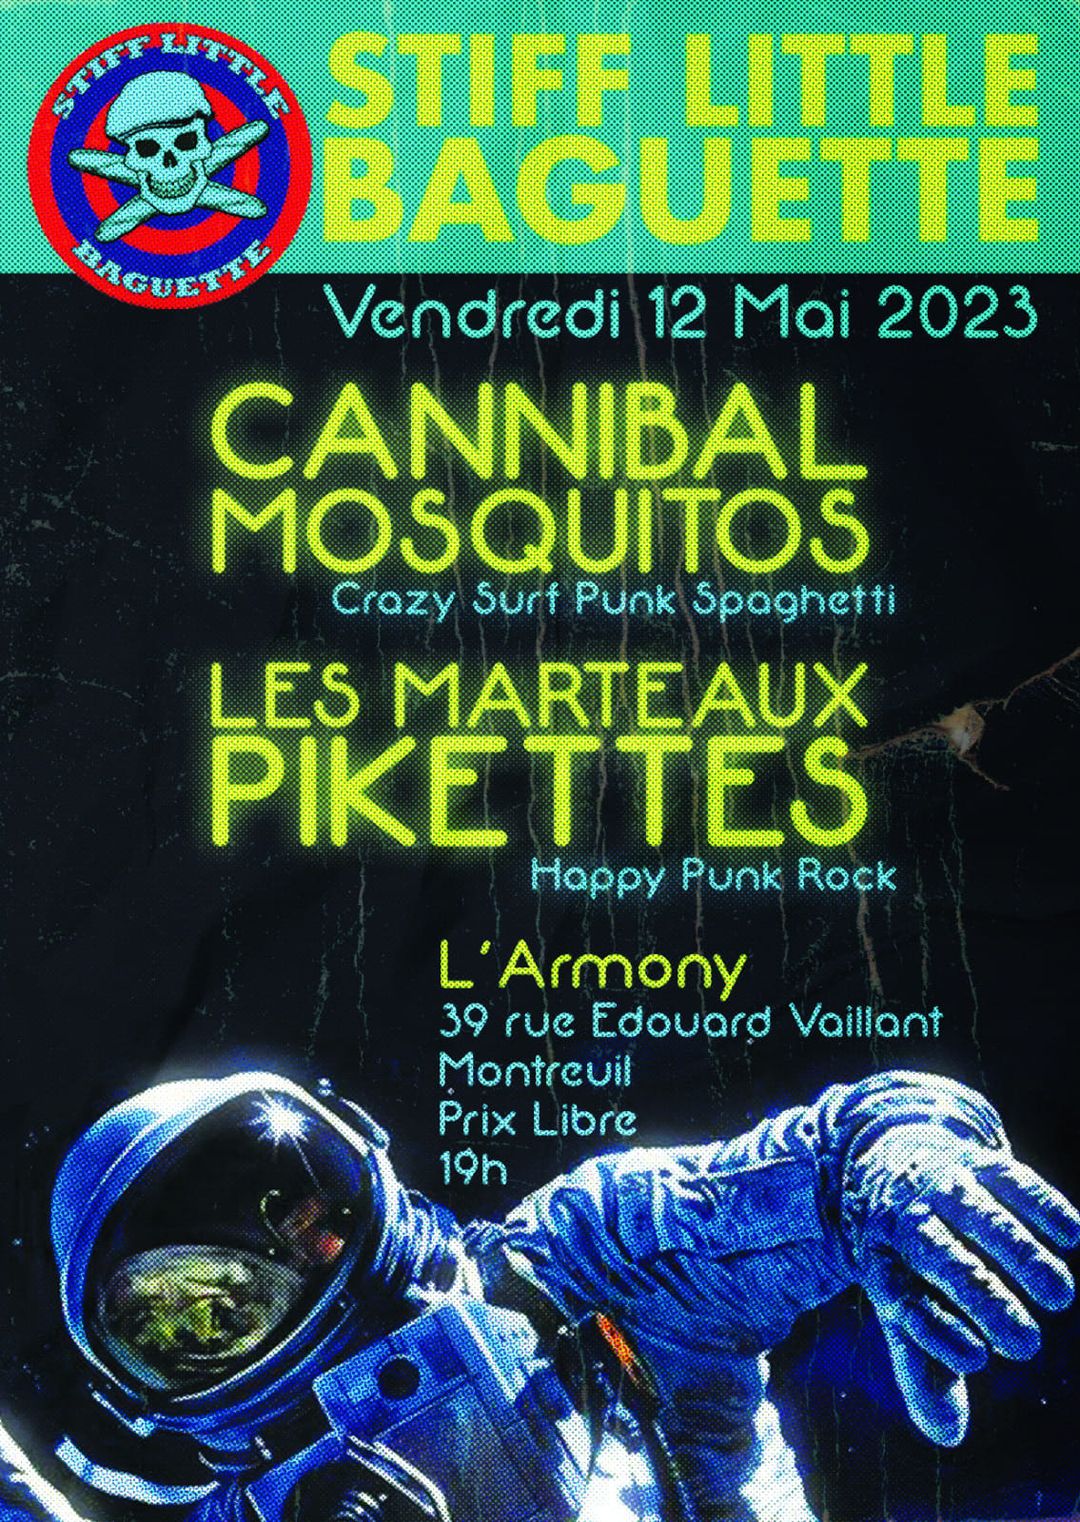 Les Marteaux Pikettes - Concert 12 mai 2023